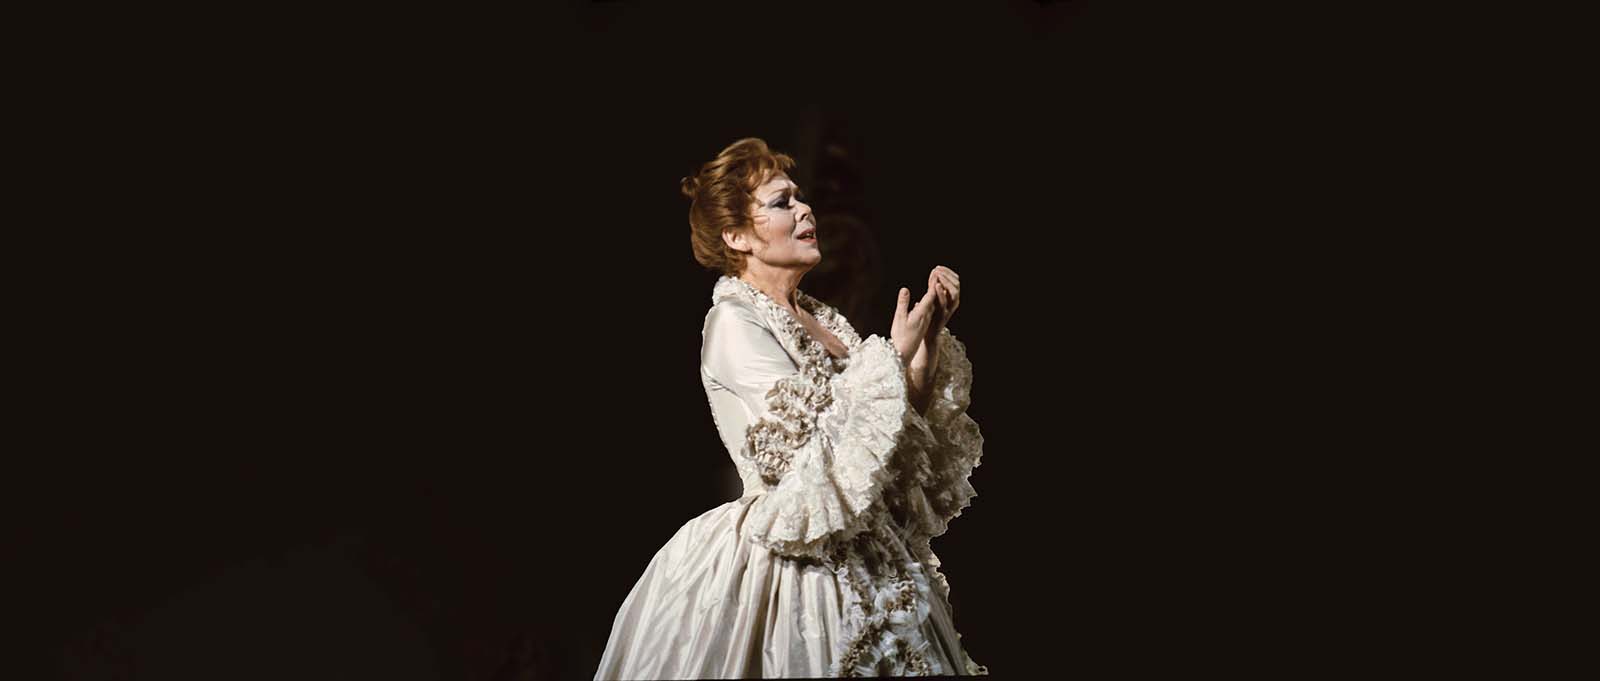 Addio a Renata Scotto, soprano e grande interprete del Novecento